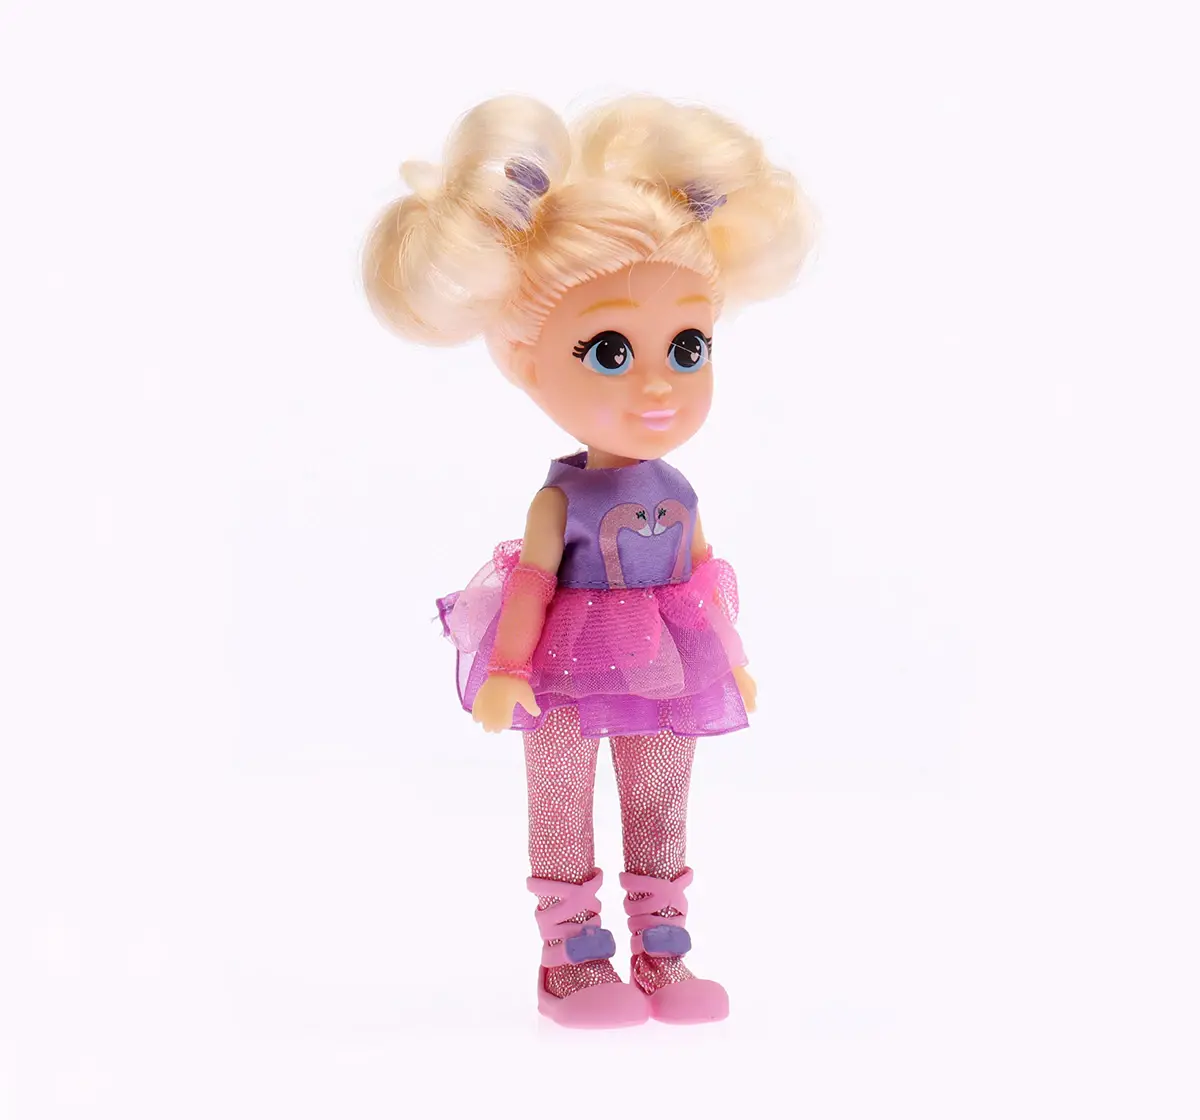 Li'l Diva Ballerina-Bella 6" Doll For Kids of Age 2Y+, Multicolour